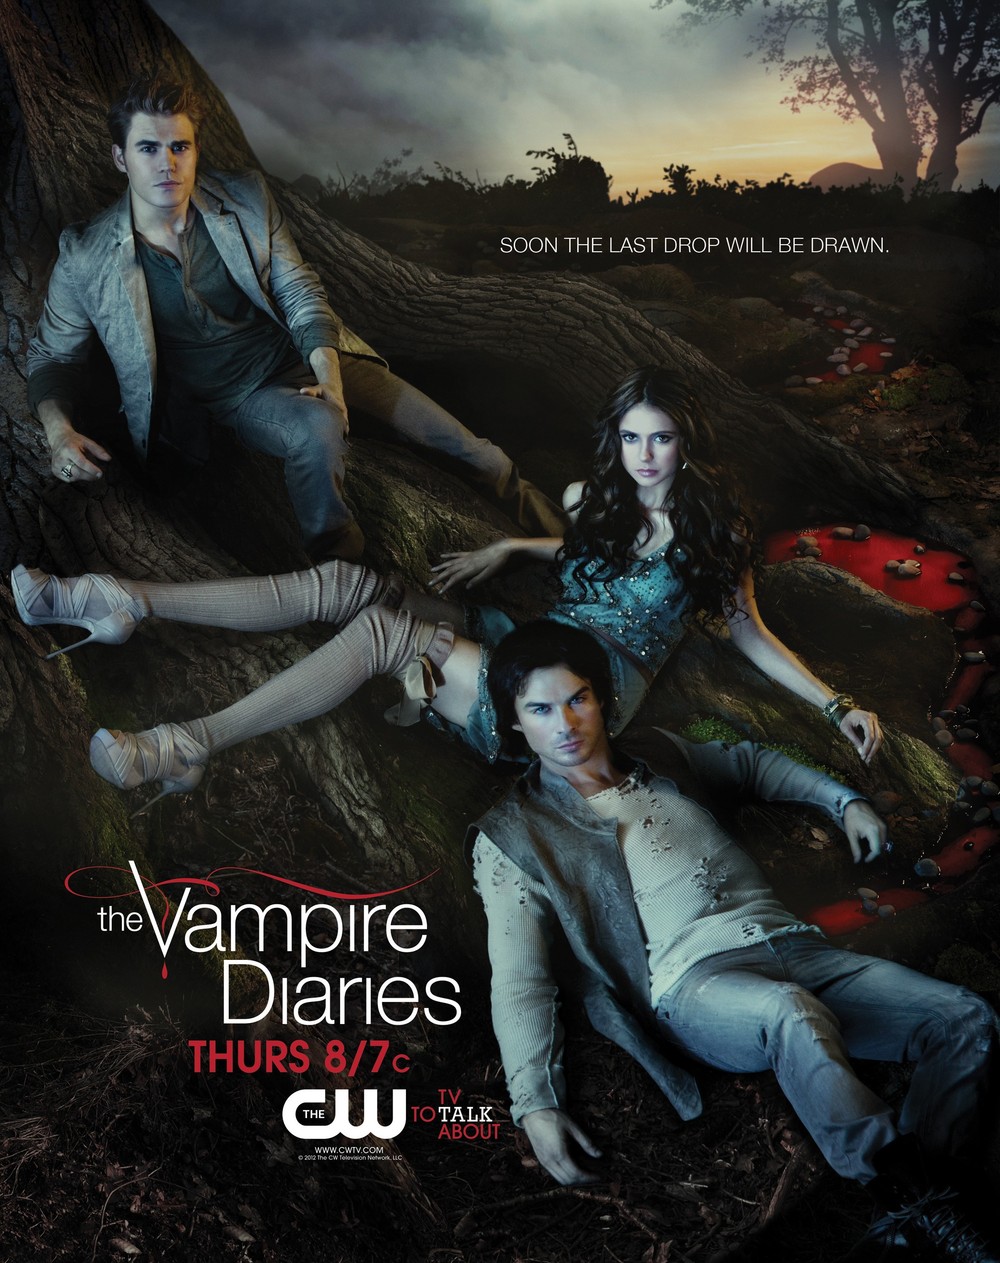 Vampire Diaries 4